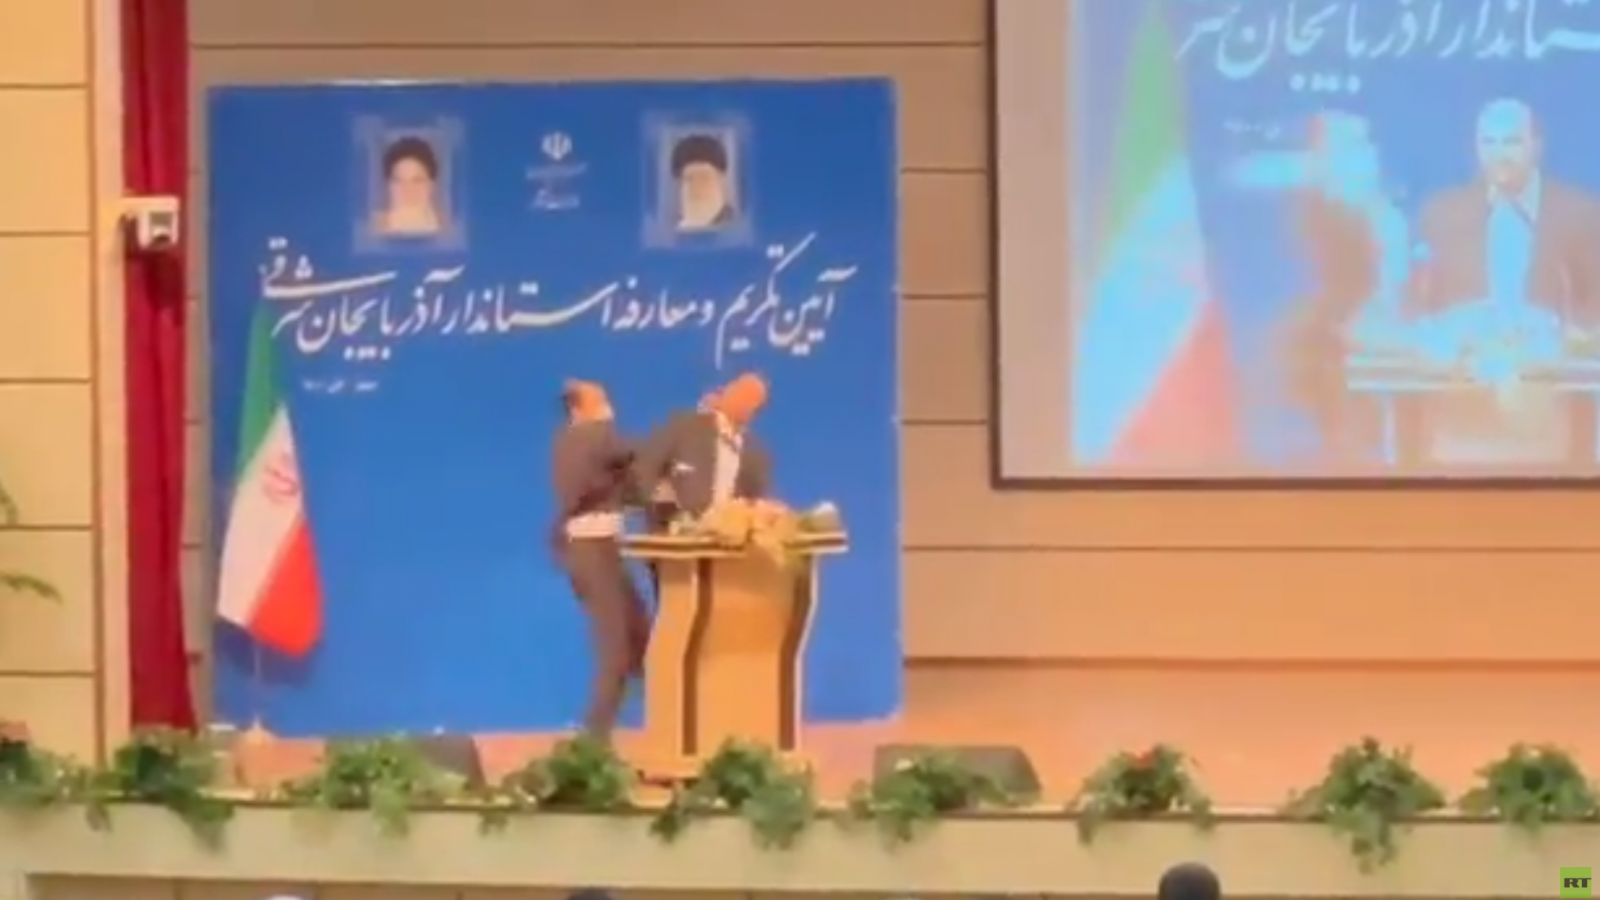 شاهد الفيديو/ مسؤول إيراني يتلقى صفعة في مراسم تنصيبه